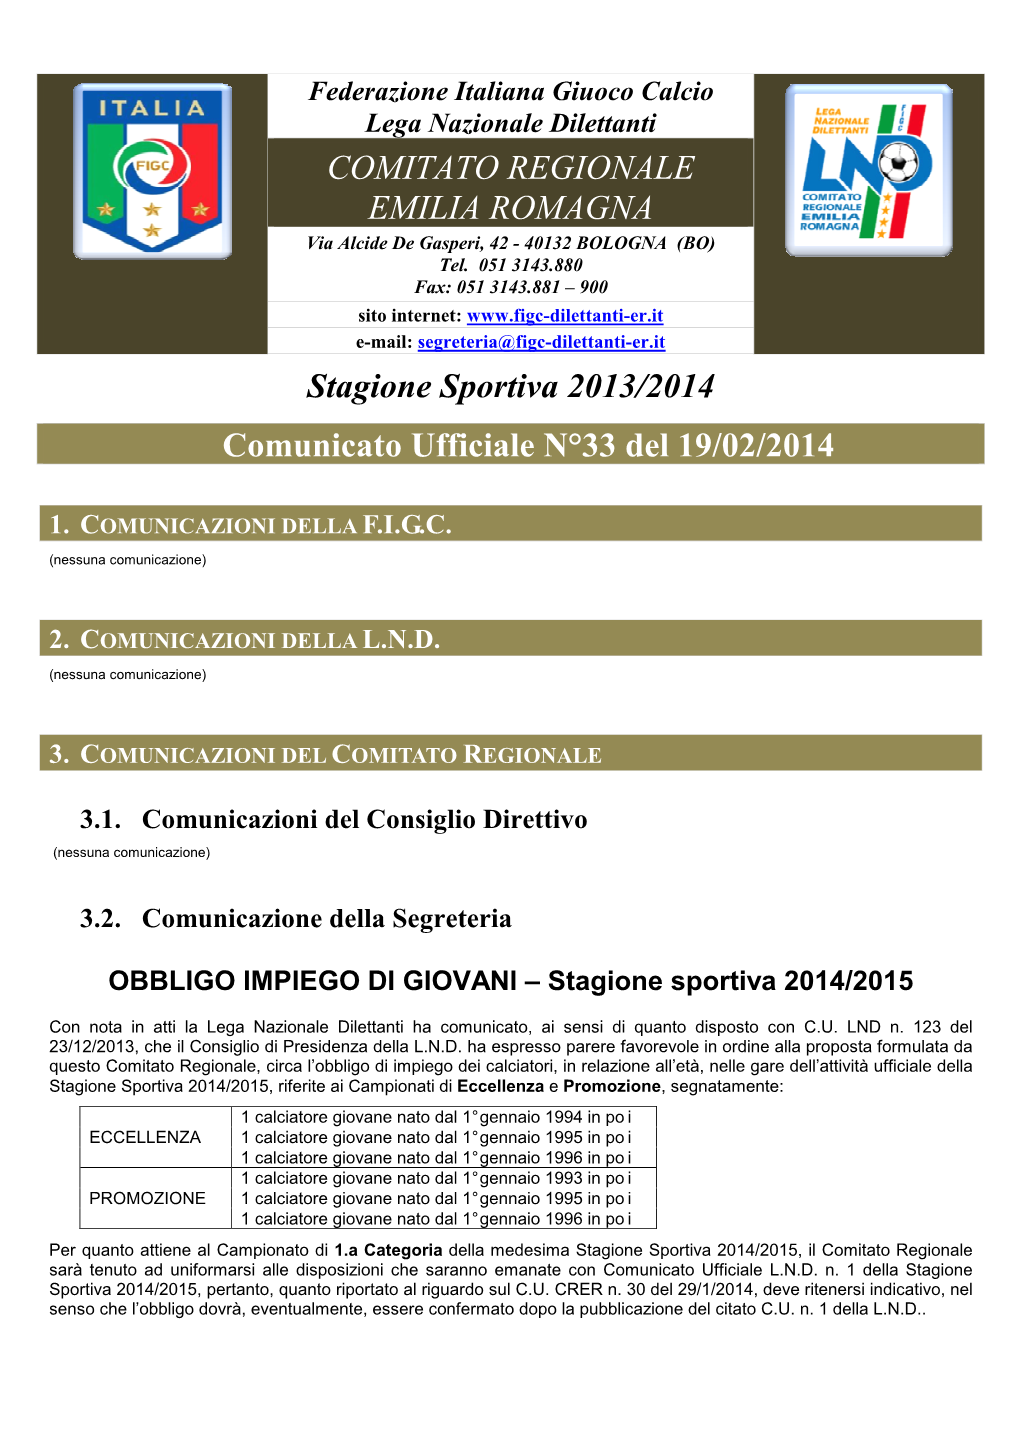 COMITATO REGIONALE EMILIA ROMAGNA Stagione Sportiva 2013